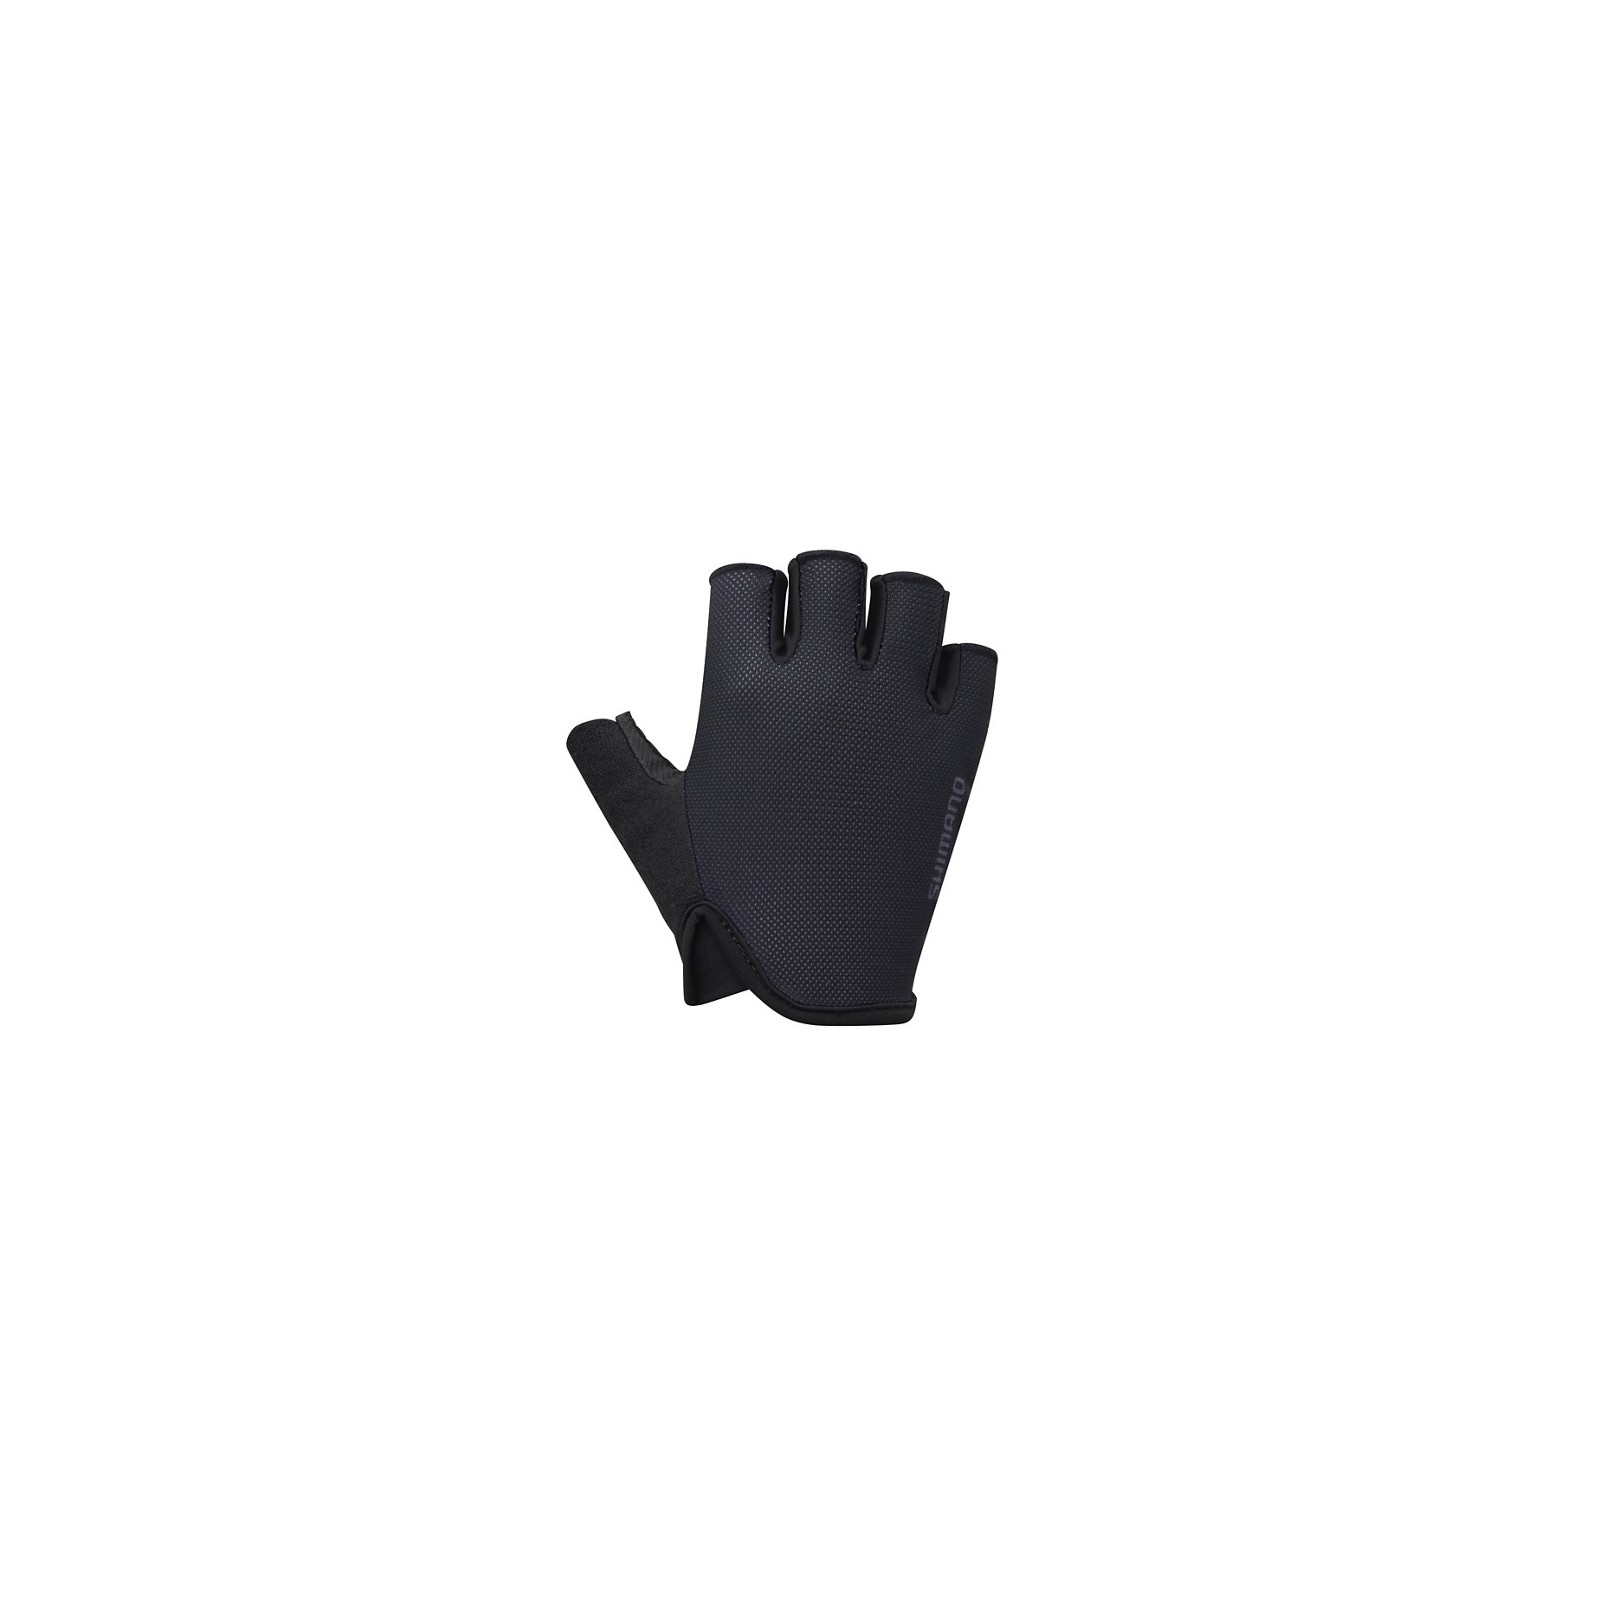 Rękawiczki Shimano damskie Airway czarne S - CWGLBSVS61WL0114